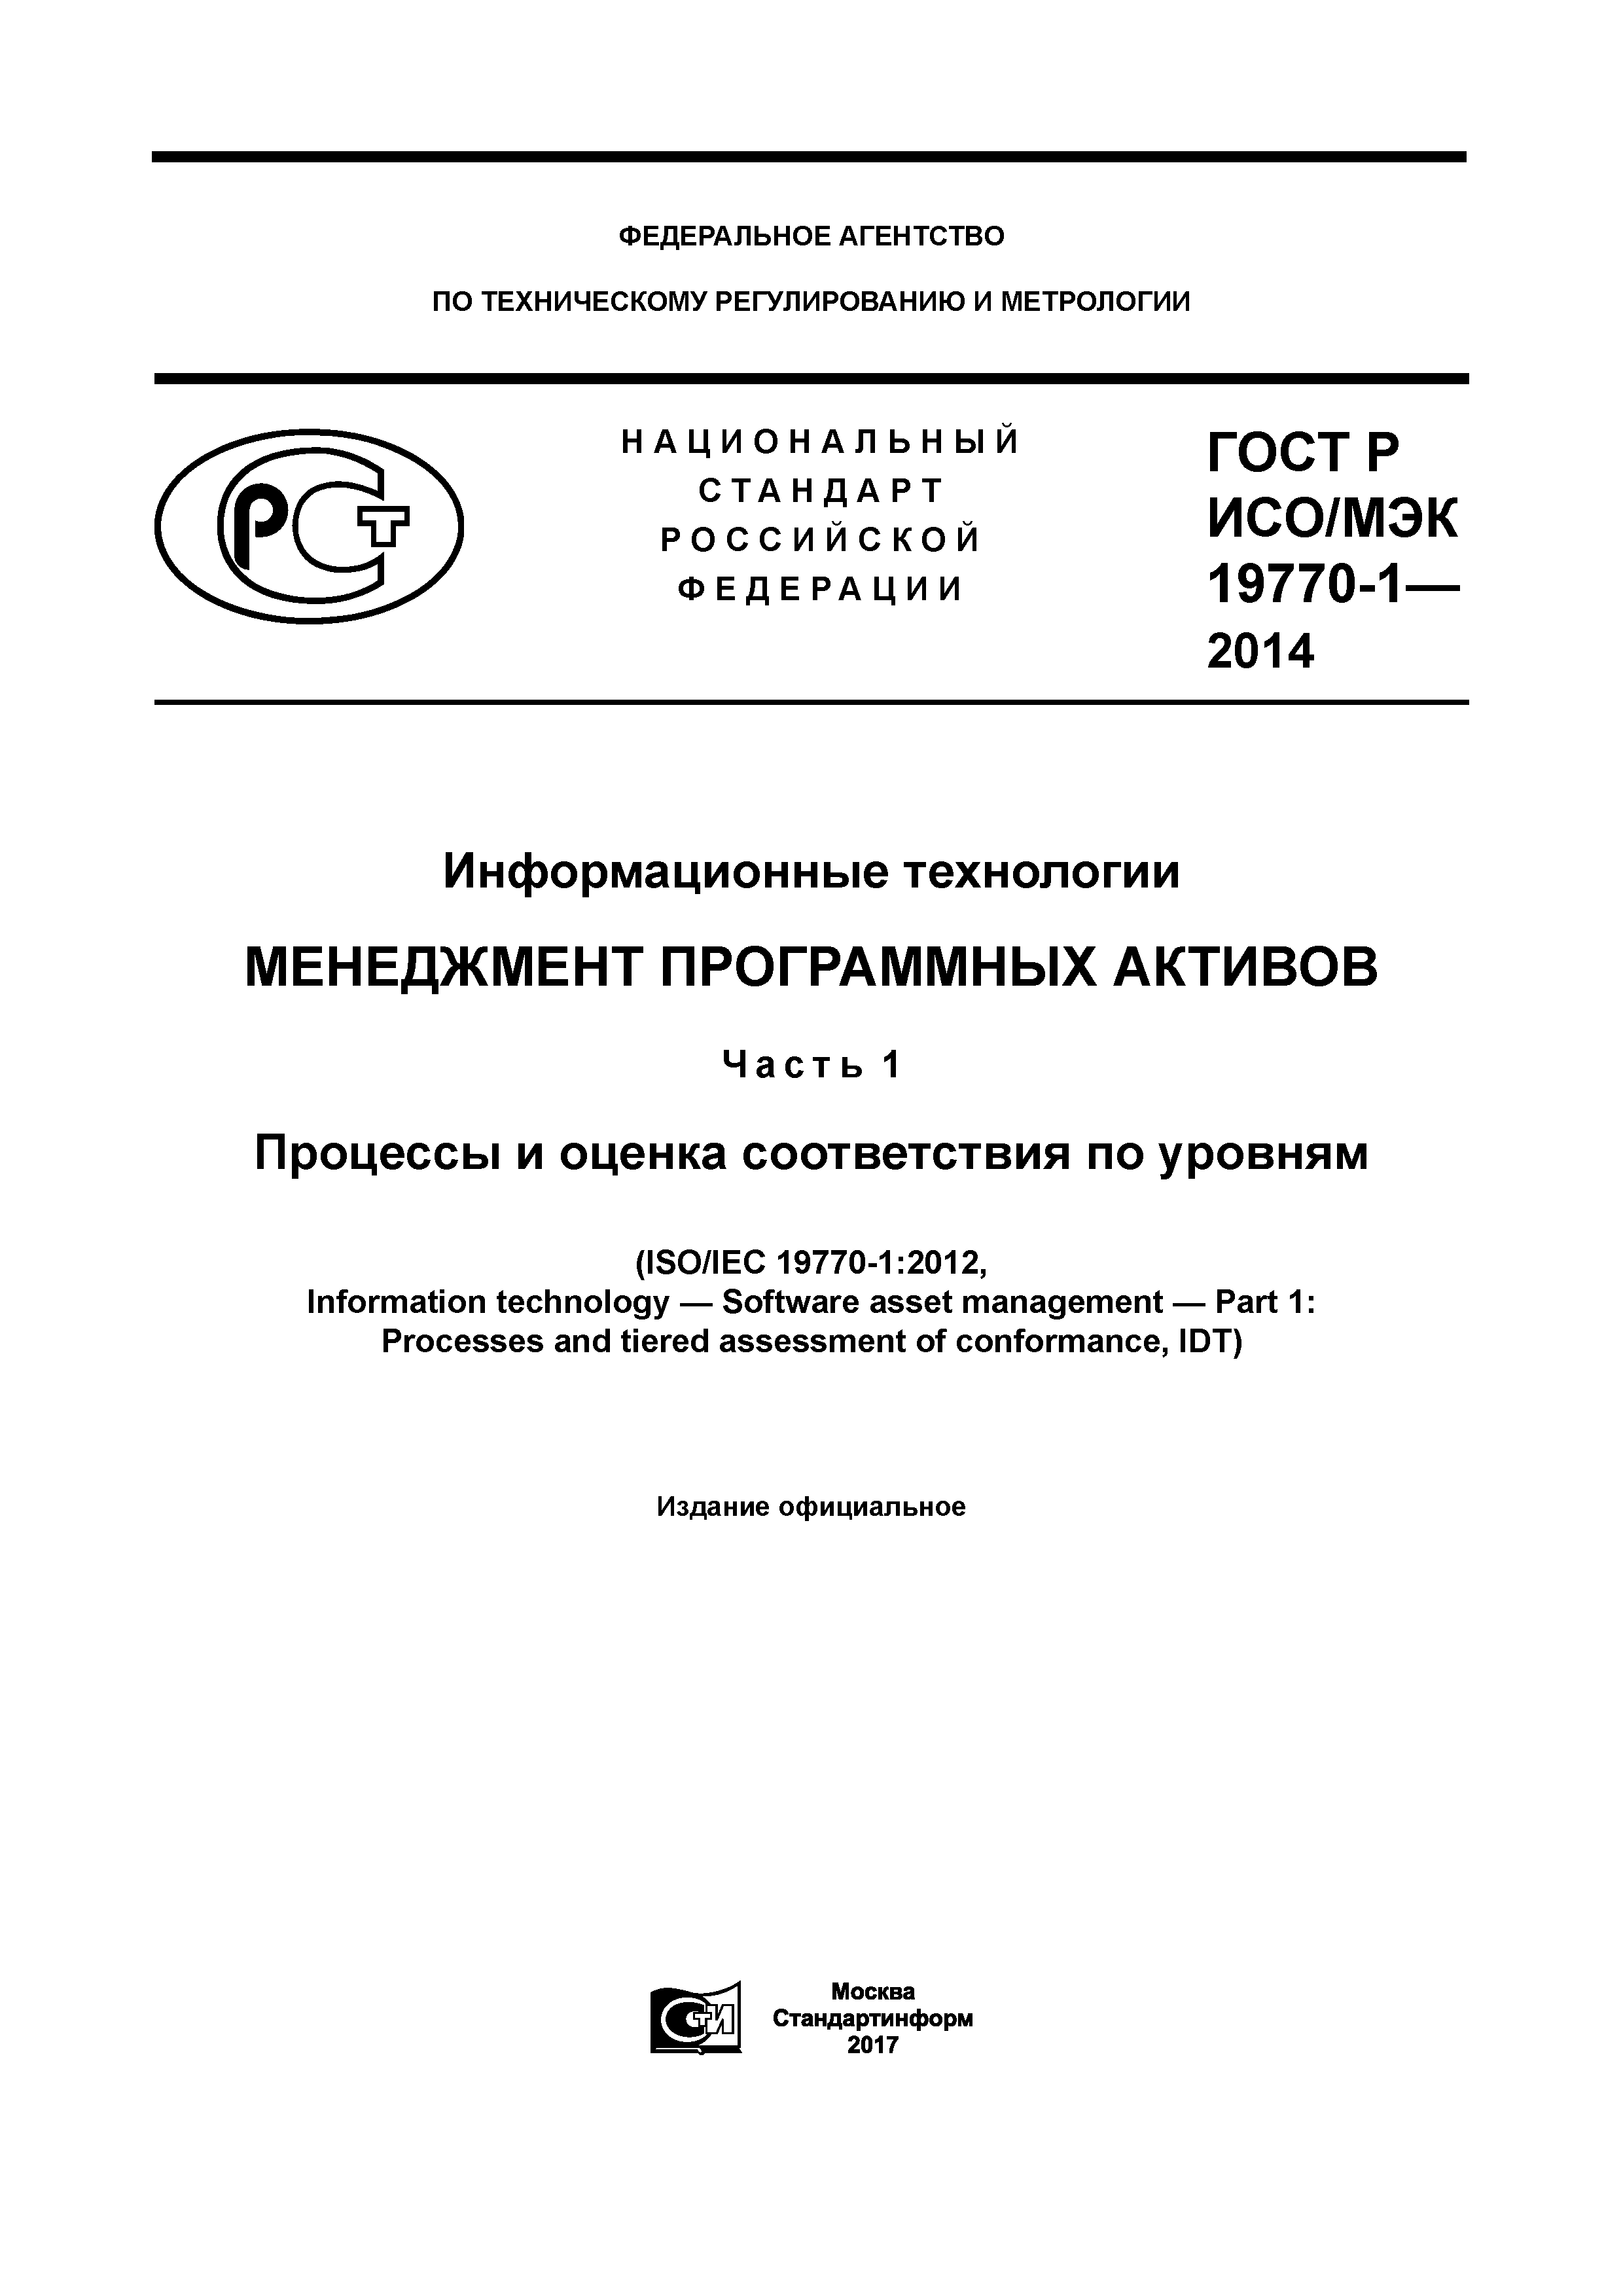 ГОСТ Р ИСО/МЭК 19770-1-2014